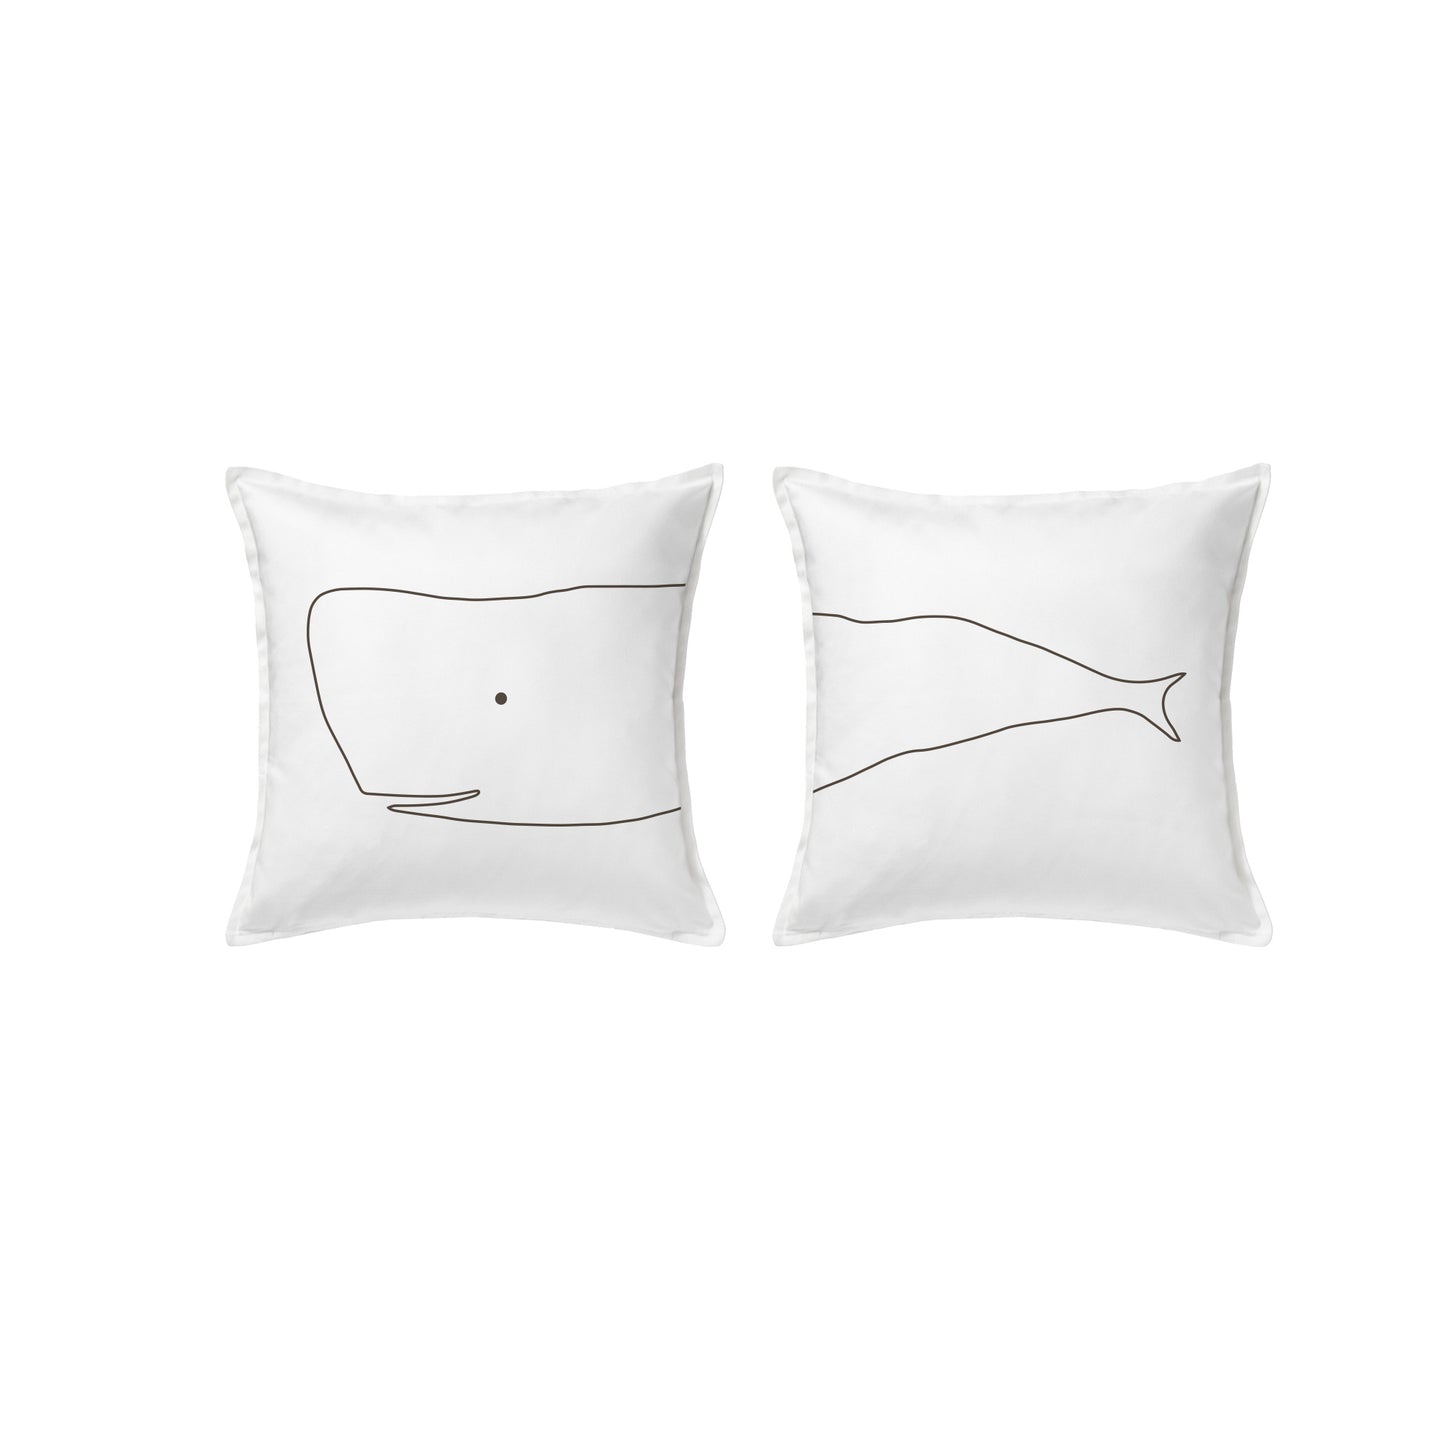 Whale pair cushion covers 50x50cm (20x20